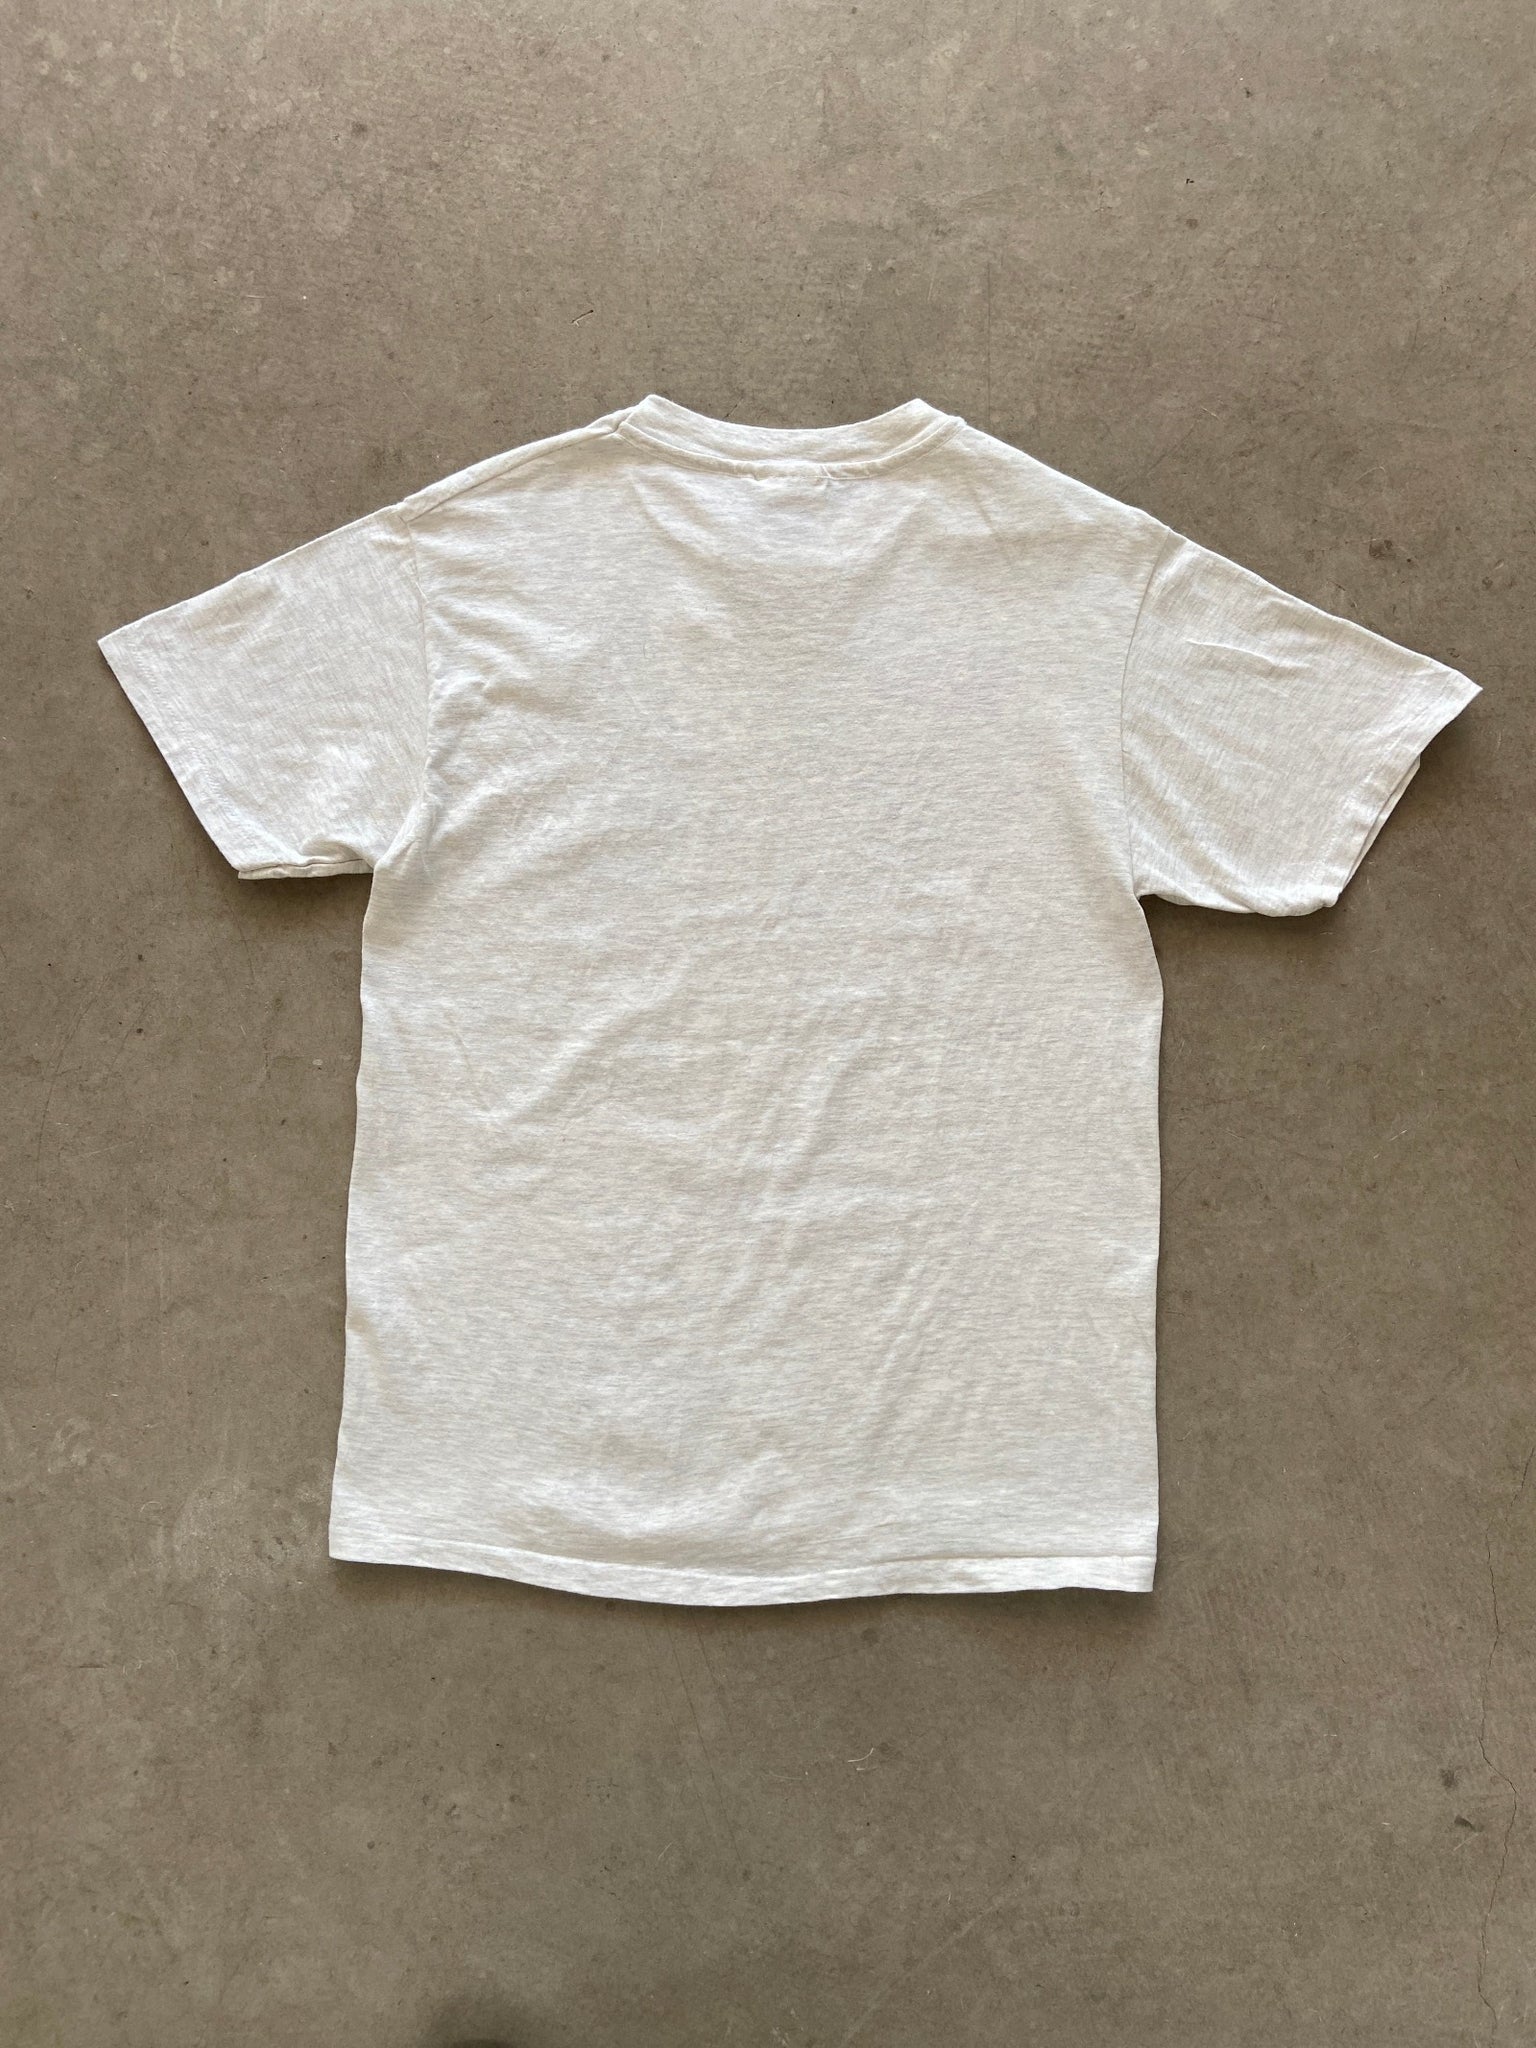 1990's Galapagos Islands T-Shirt - M